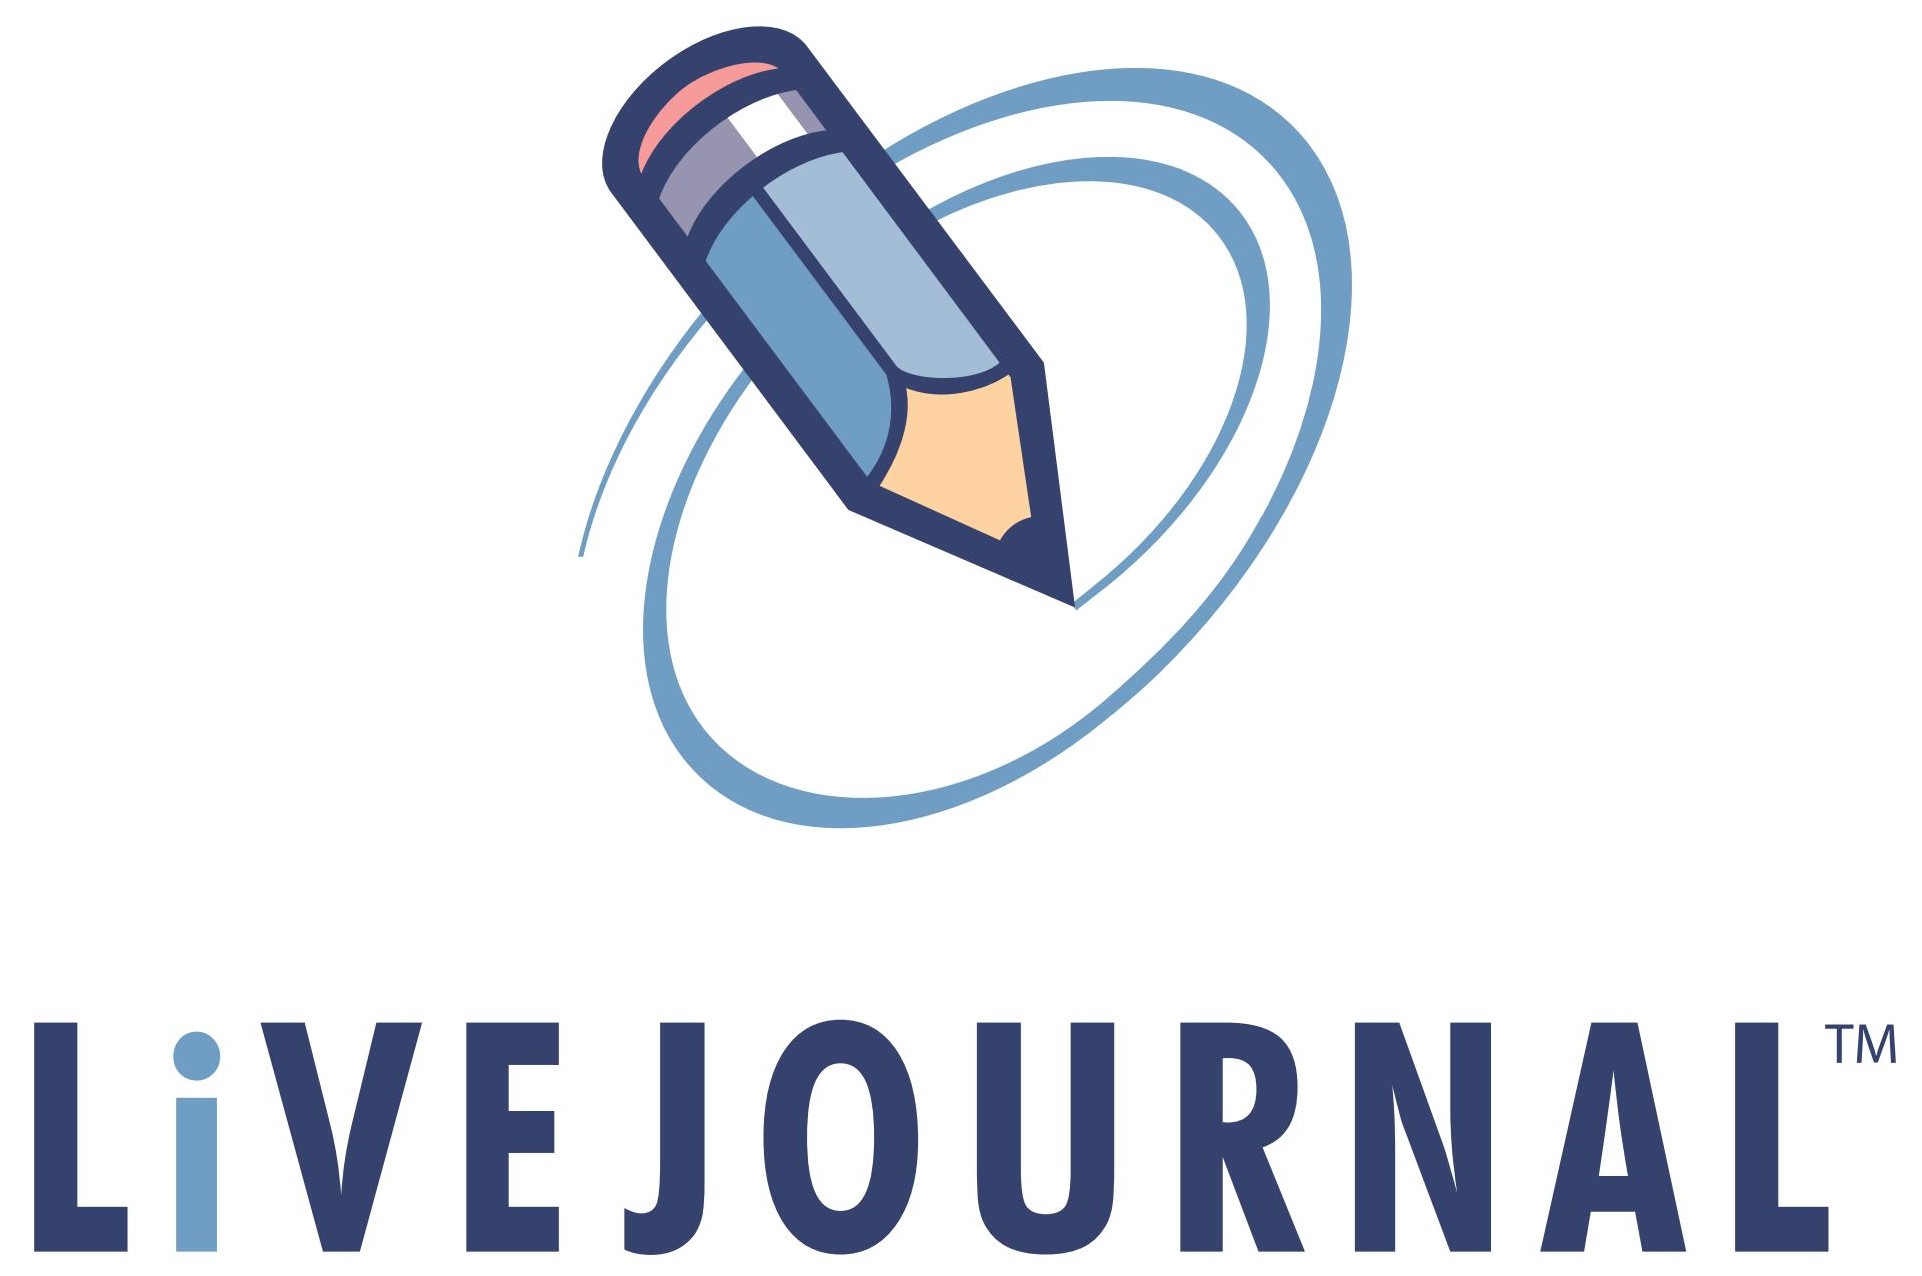 Жж дд. Живой журнал. Livejournal лого. Живой журнал логотип. Livejournal (ЖЖ).